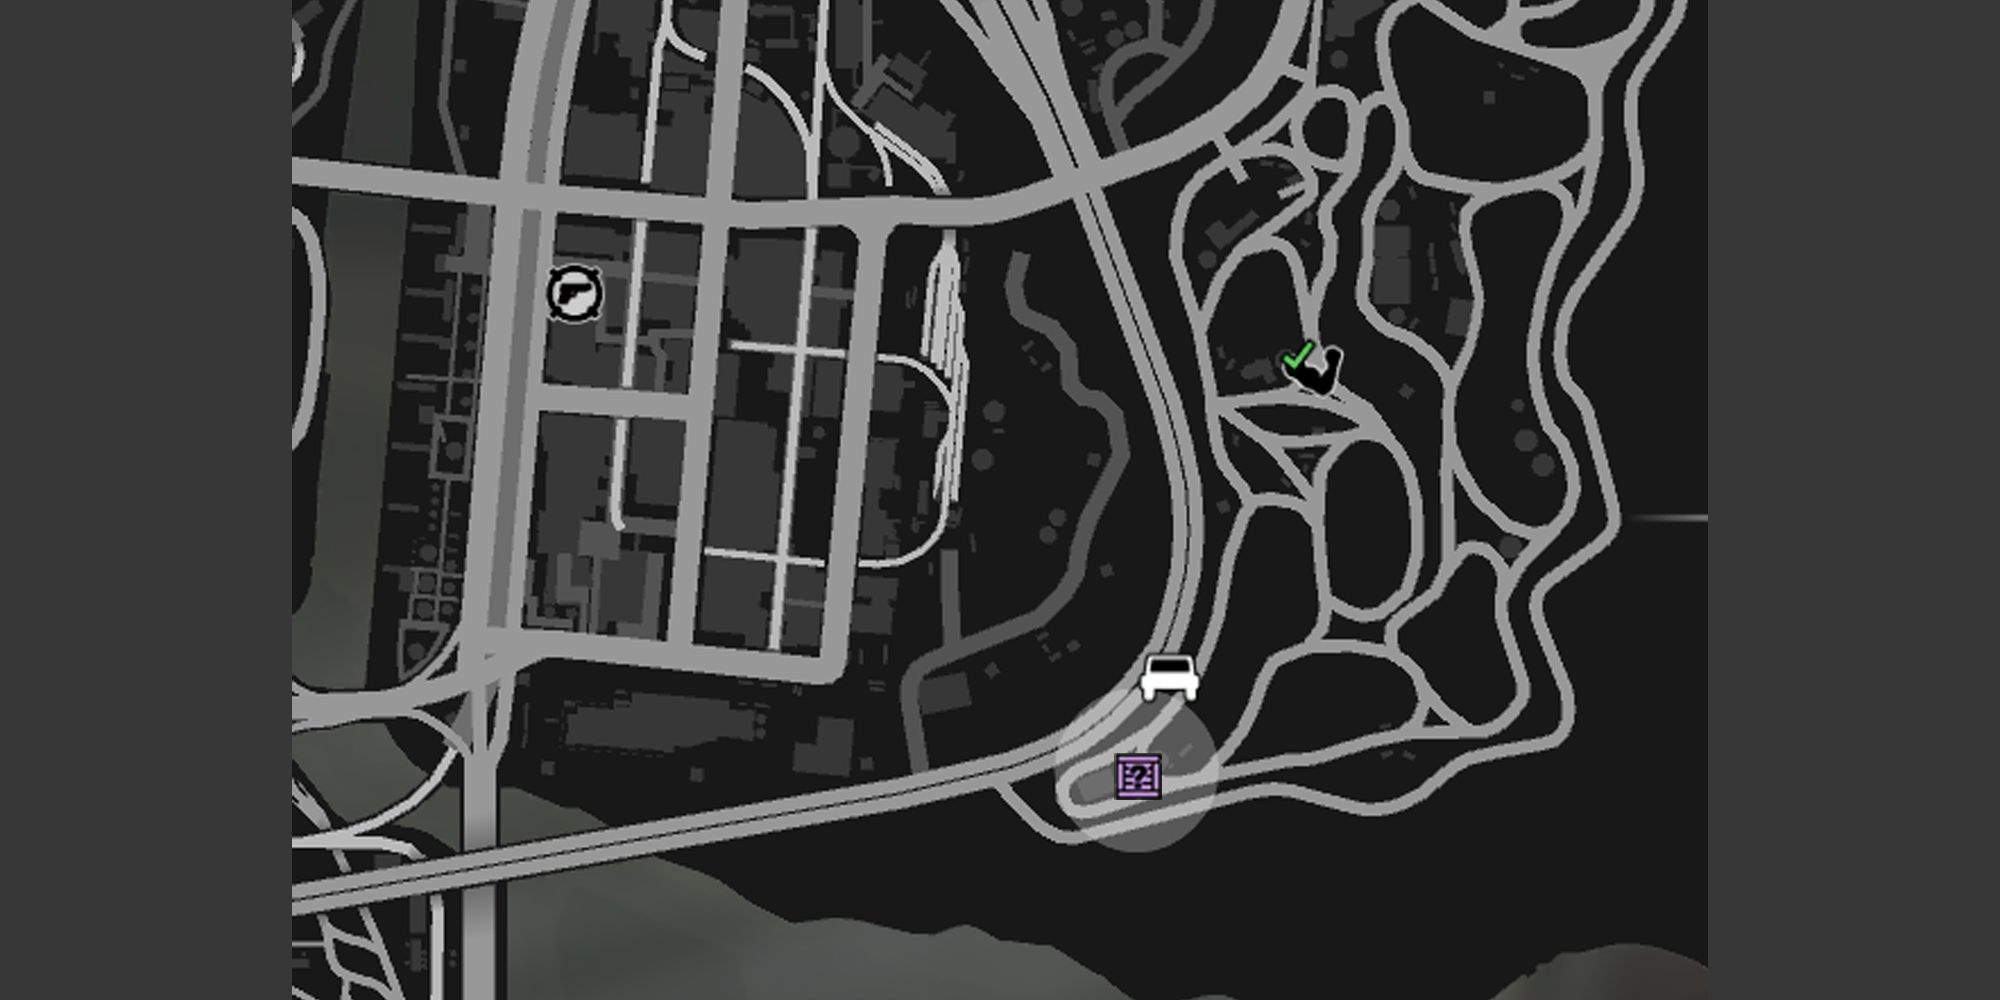 Jay and Sons in El Burro Heightsを示す灰色の円と紫のG'sキャッシュの箱アイコンのGTAオンラインマップのイメージ